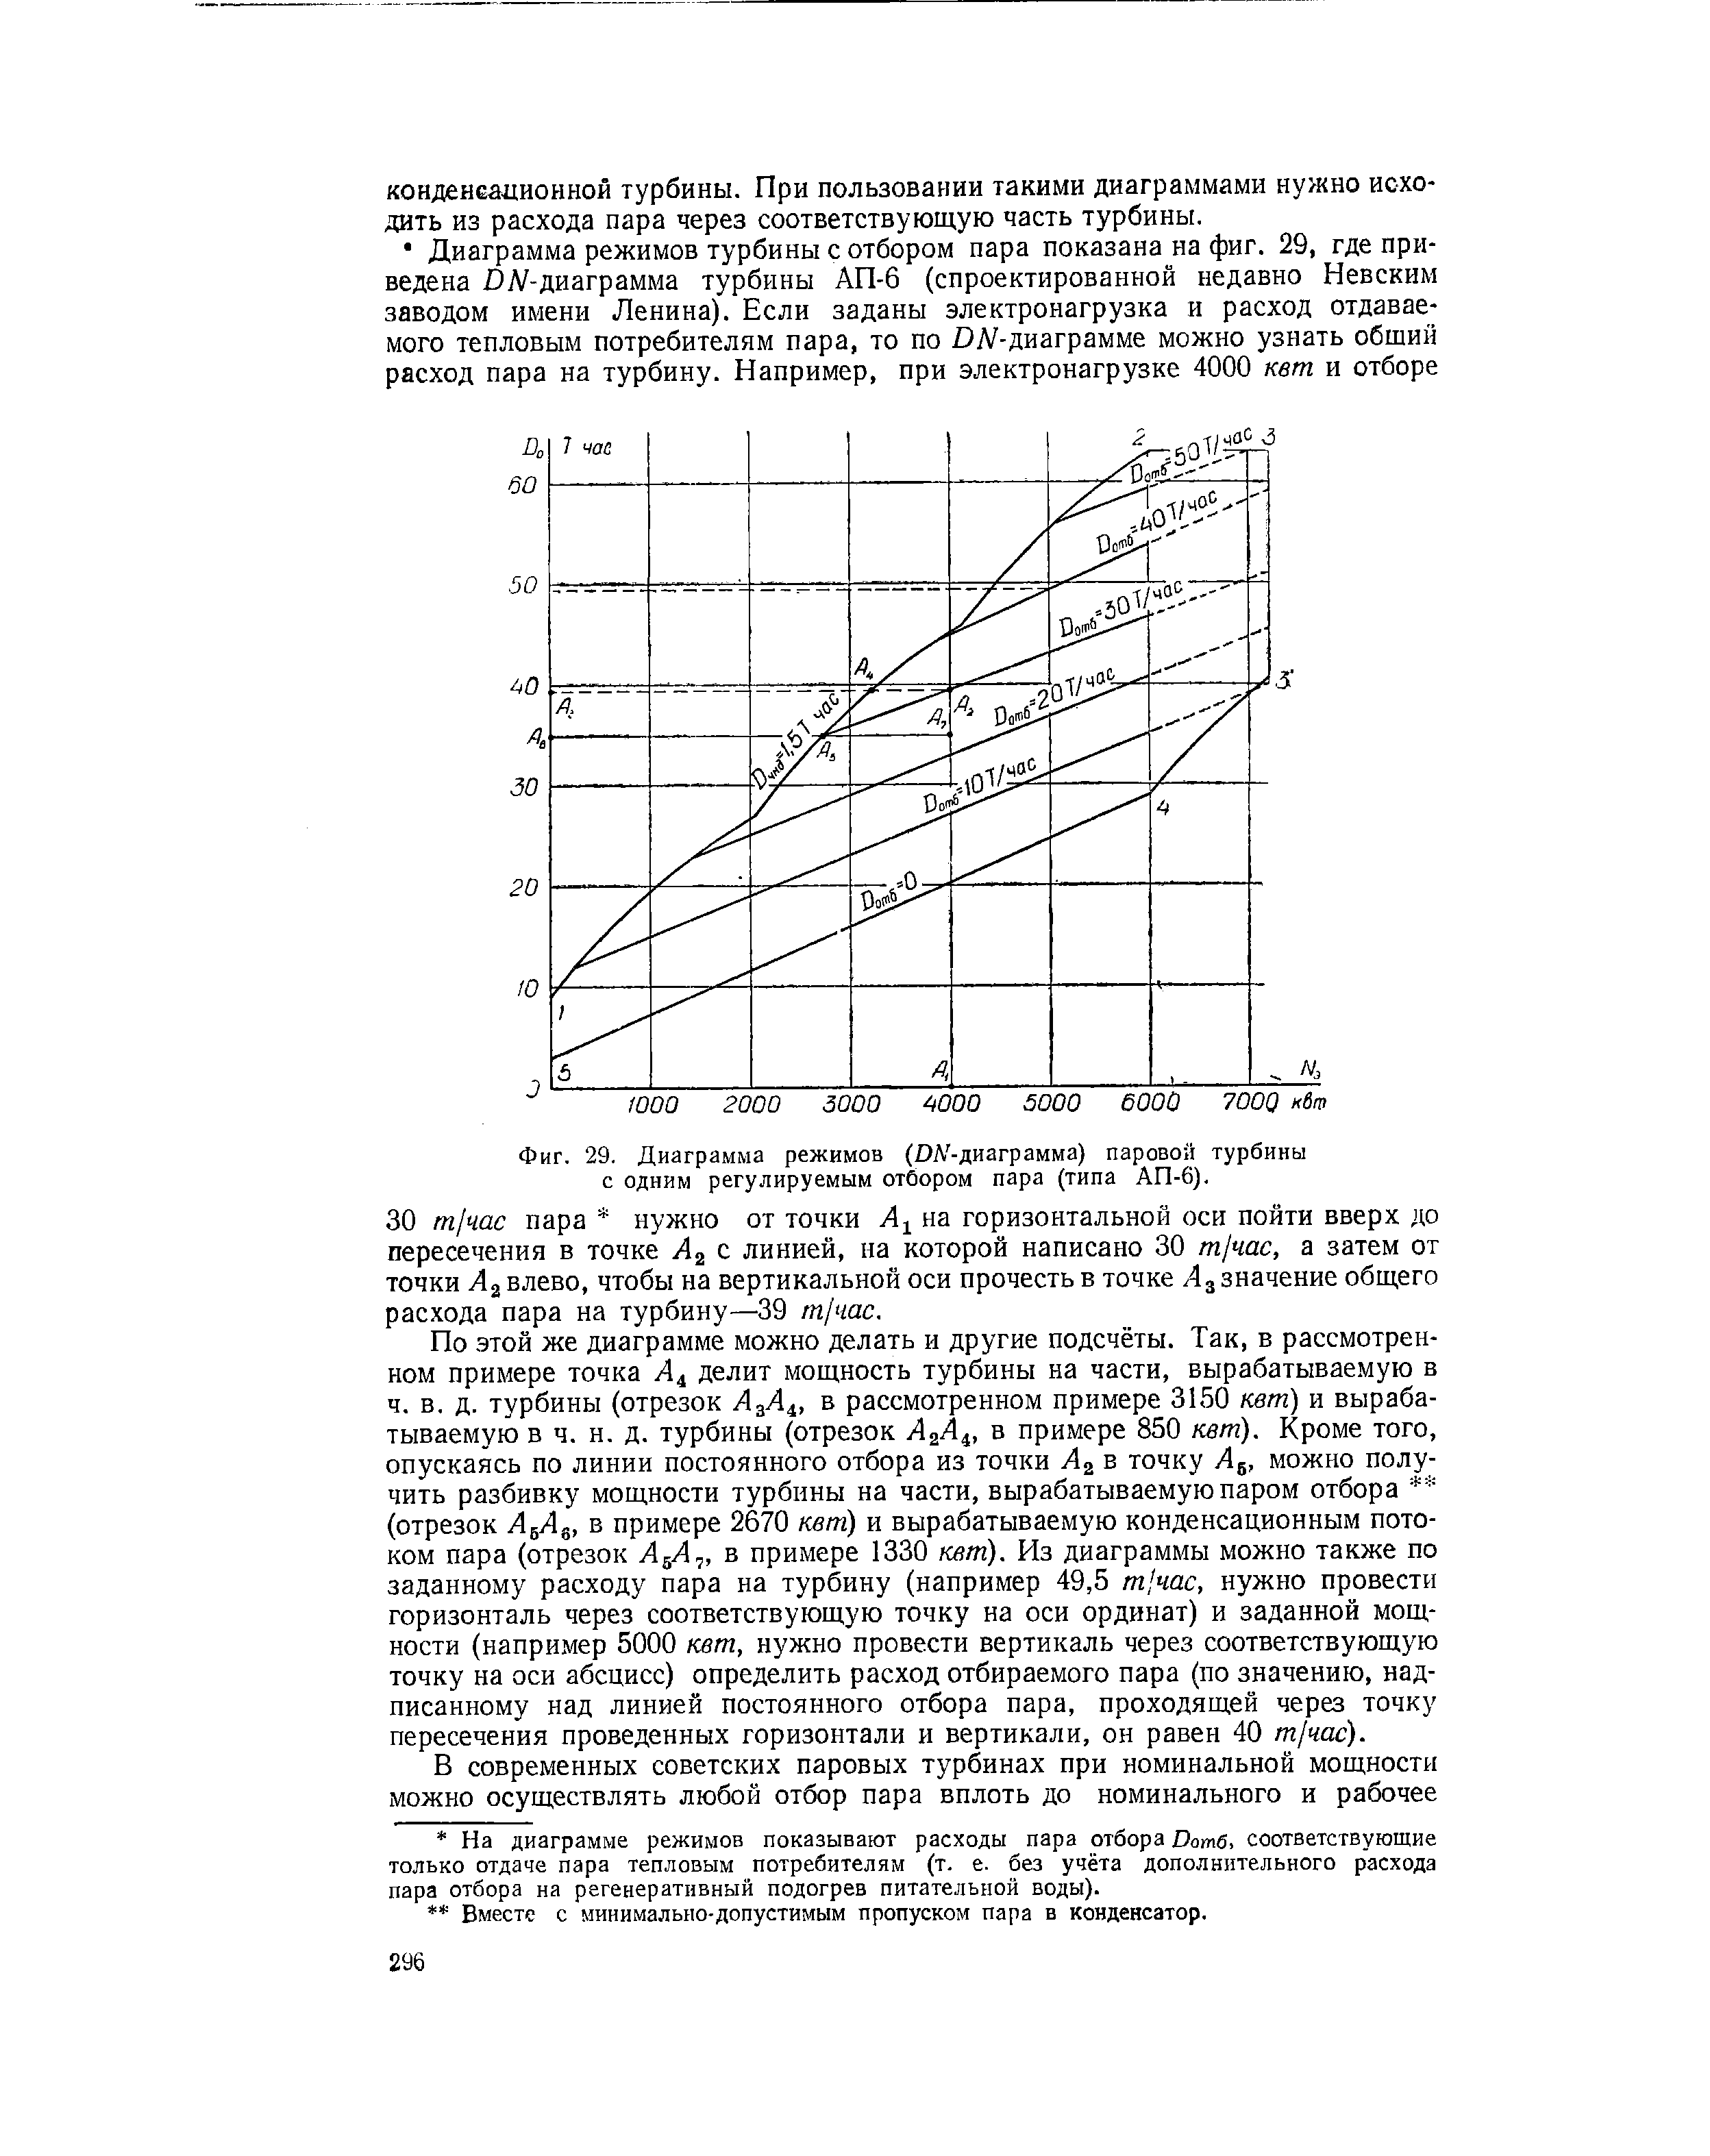 Фиг. 29. Диаграмма режимов (DA -диаграмма) <a href="/info/885">паровой турбины</a> с одним регулируемым отбором пара (типа АП-6).
